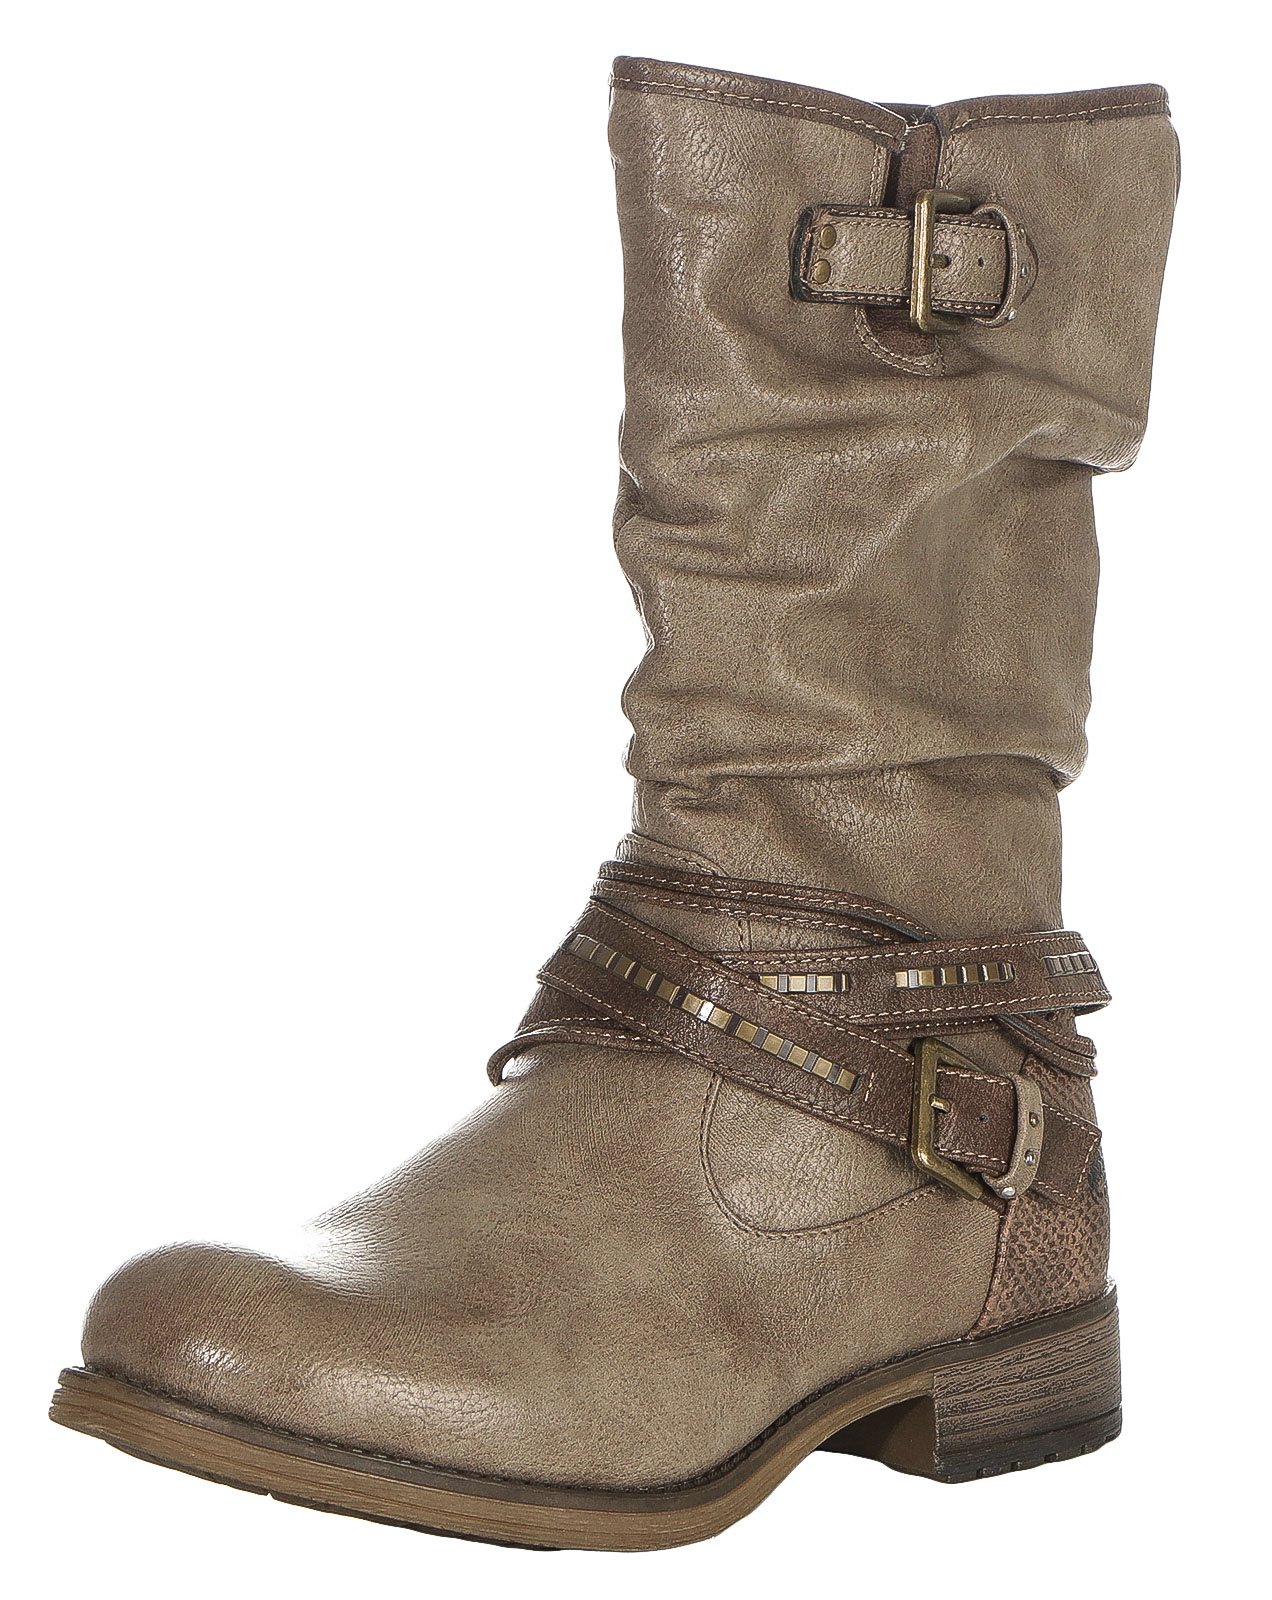 Mustang Damen Winterschuhe Stiefeletten Schuhe Stiefel Boots Bootys 1139-630 